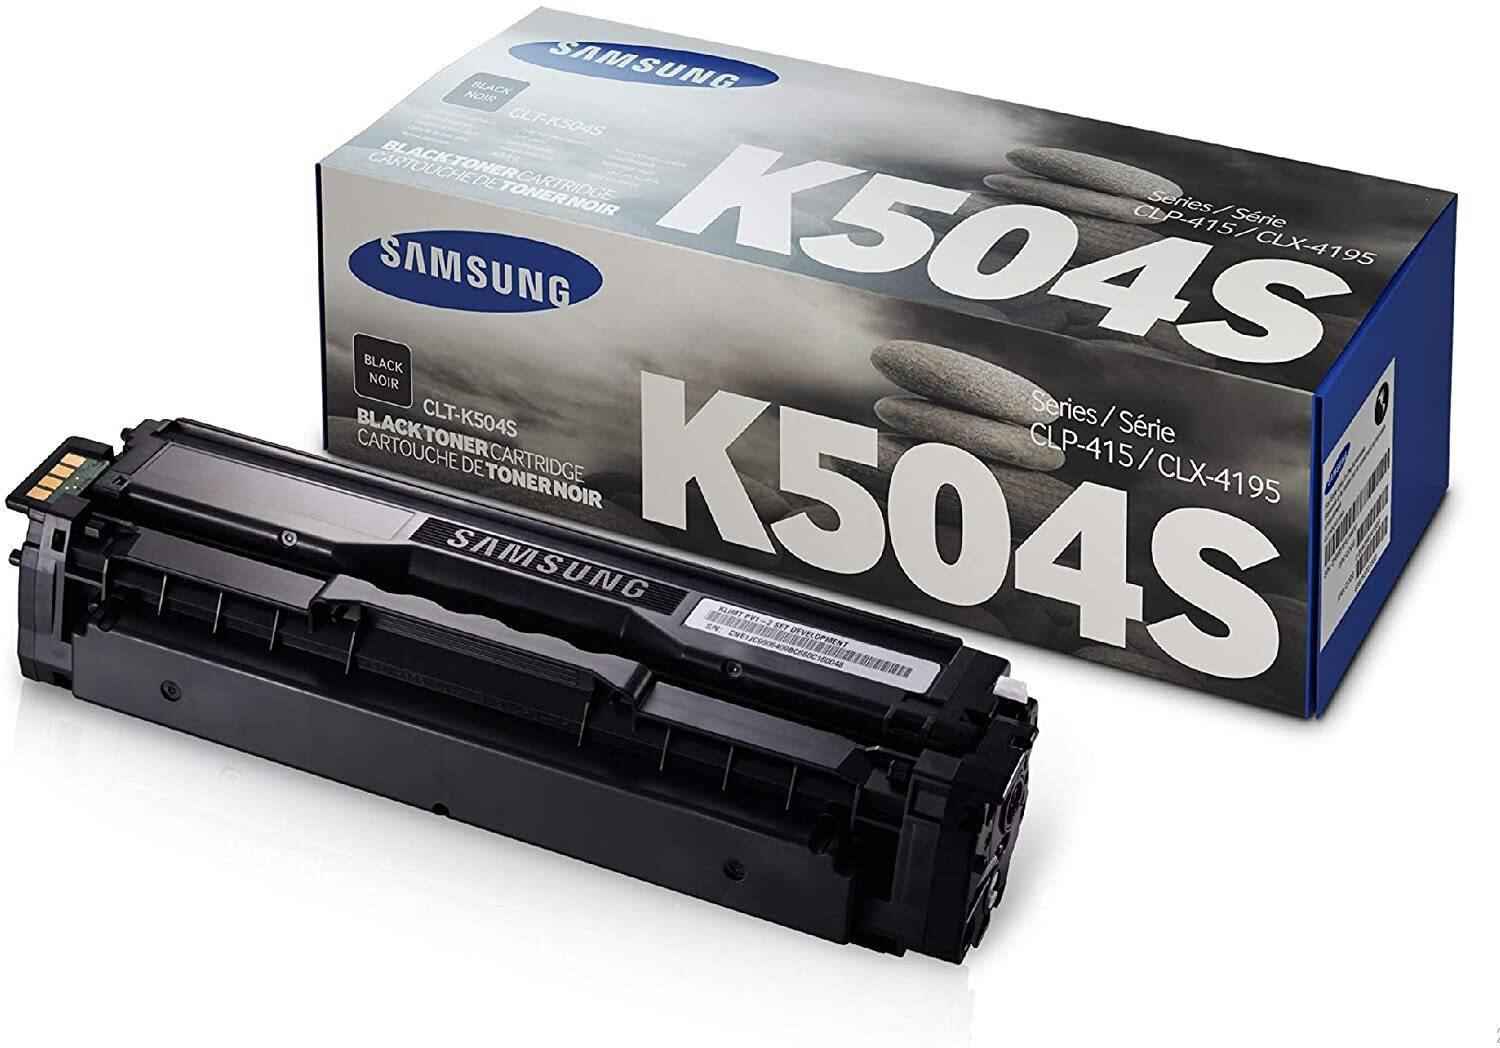 Samsung Clt-K504S Toner Cartridge Black For Sl-C1810W, C1860Fw, Clx-4195N, 4195Fn, 4195Fw, Clp-415N, 415Nw